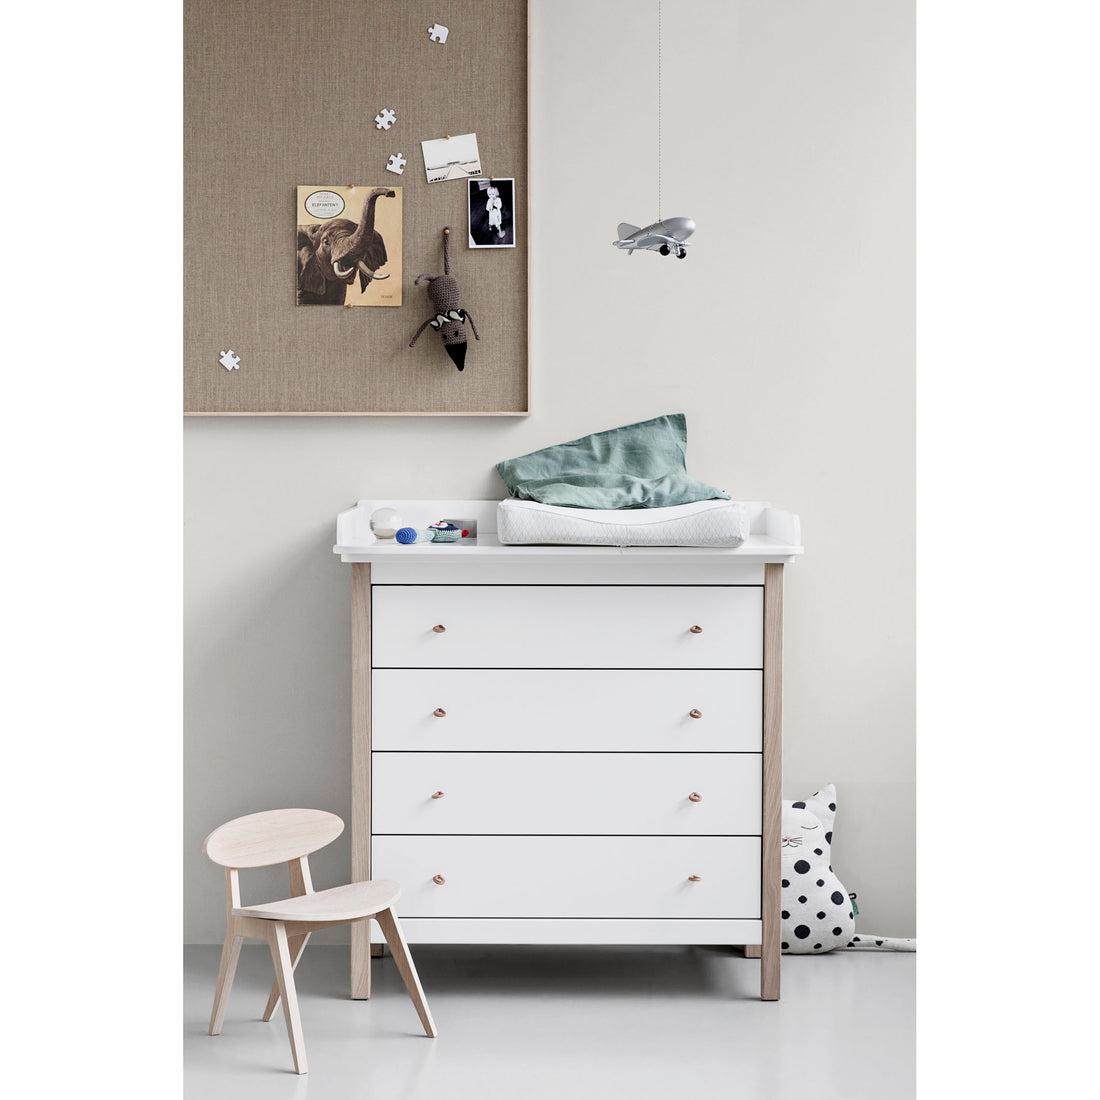 oliver-furniture-wood-dresser-4-drawers-white-oak- (4)